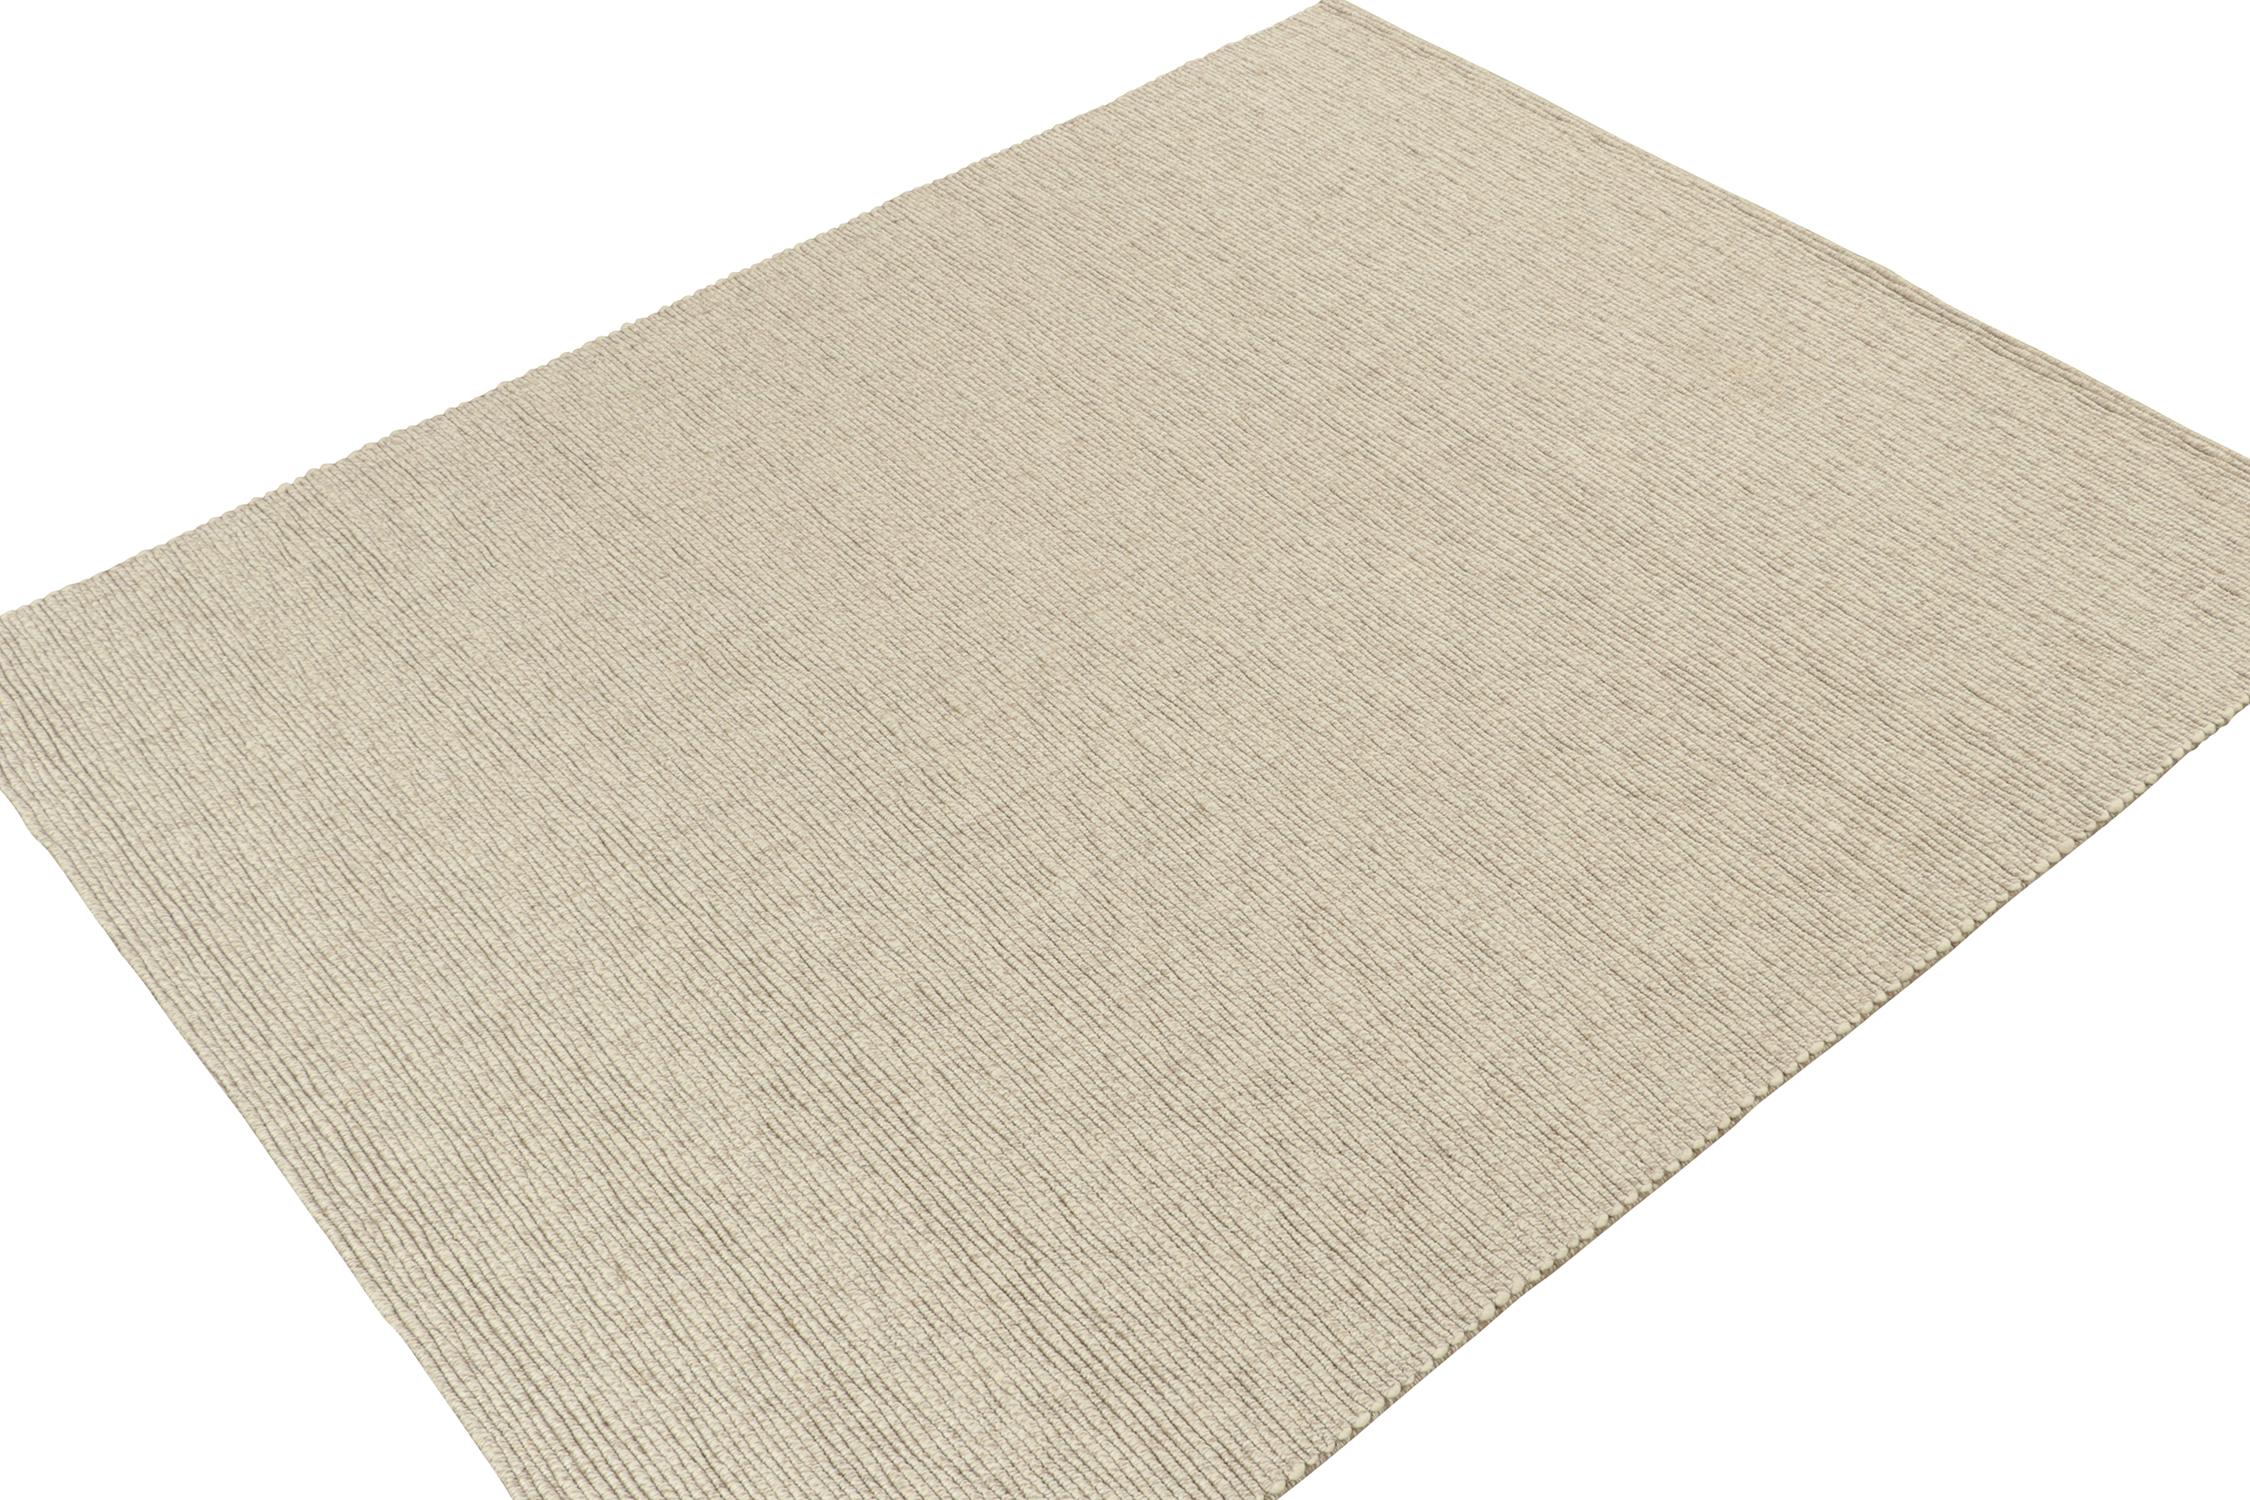 Ce tapis personnalisé est un nouvel ajout à la collection de Rug & Kilim, tissé à la main en laine naturelle.

Plus loin dans le Design :

Une texture en forme de tresse tire le meilleur parti des notes ivoire et beige qui s'inscrivent dans un look